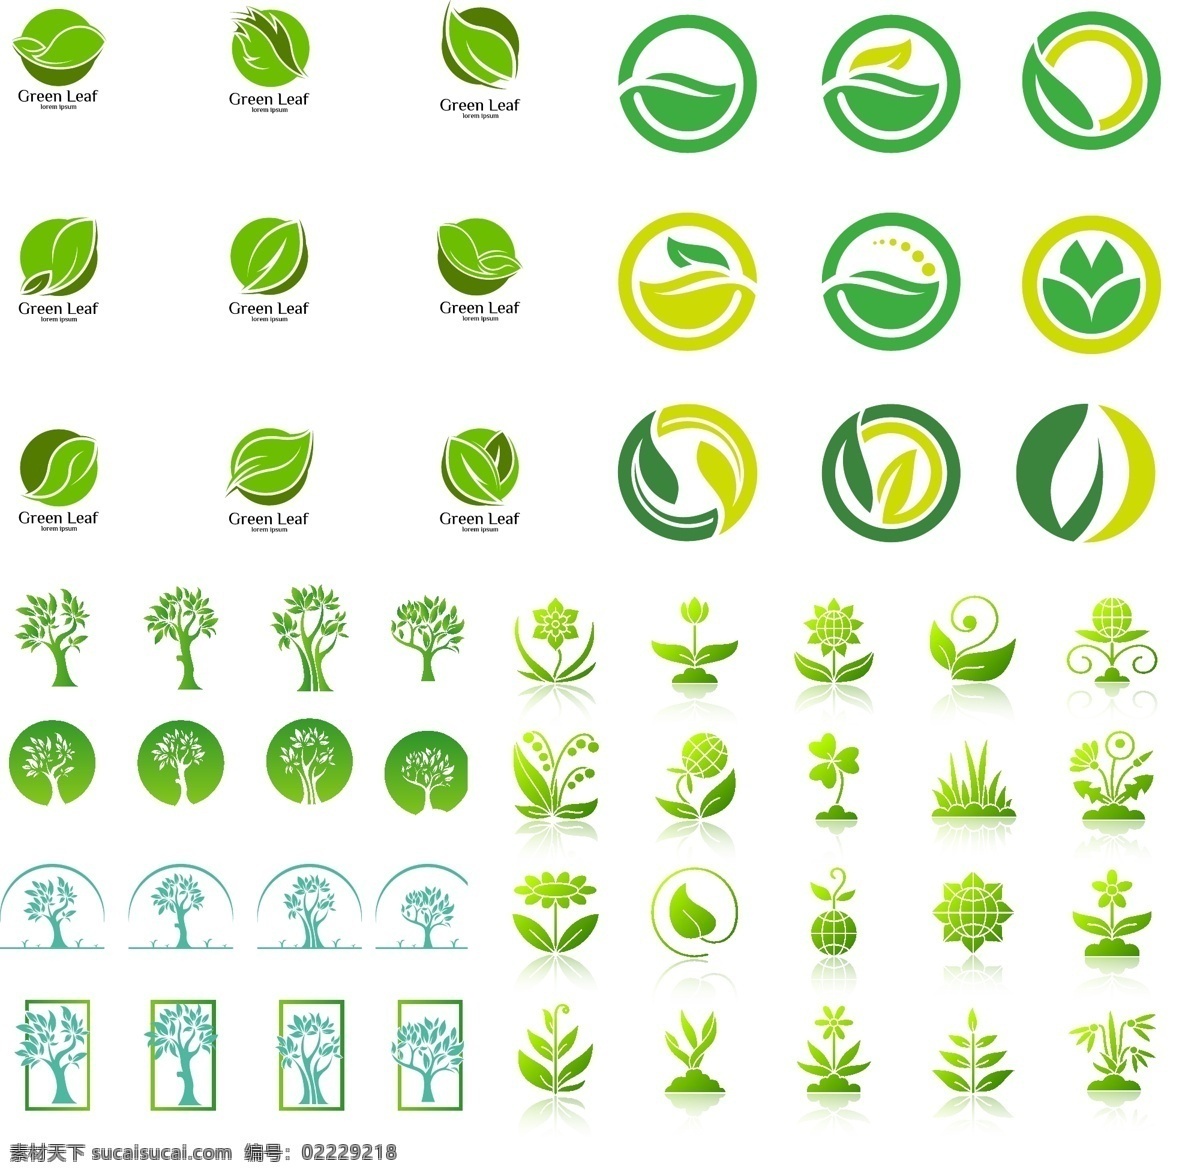 绿叶 元素 装饰 变化 组合 标志 绿叶元素装饰 变化组合标志 矢量素材 矢量图 设计素材 创意设计 标志设计 logo设计 绿色 树叶 节能 环保 生态 标志图标 企业 logo